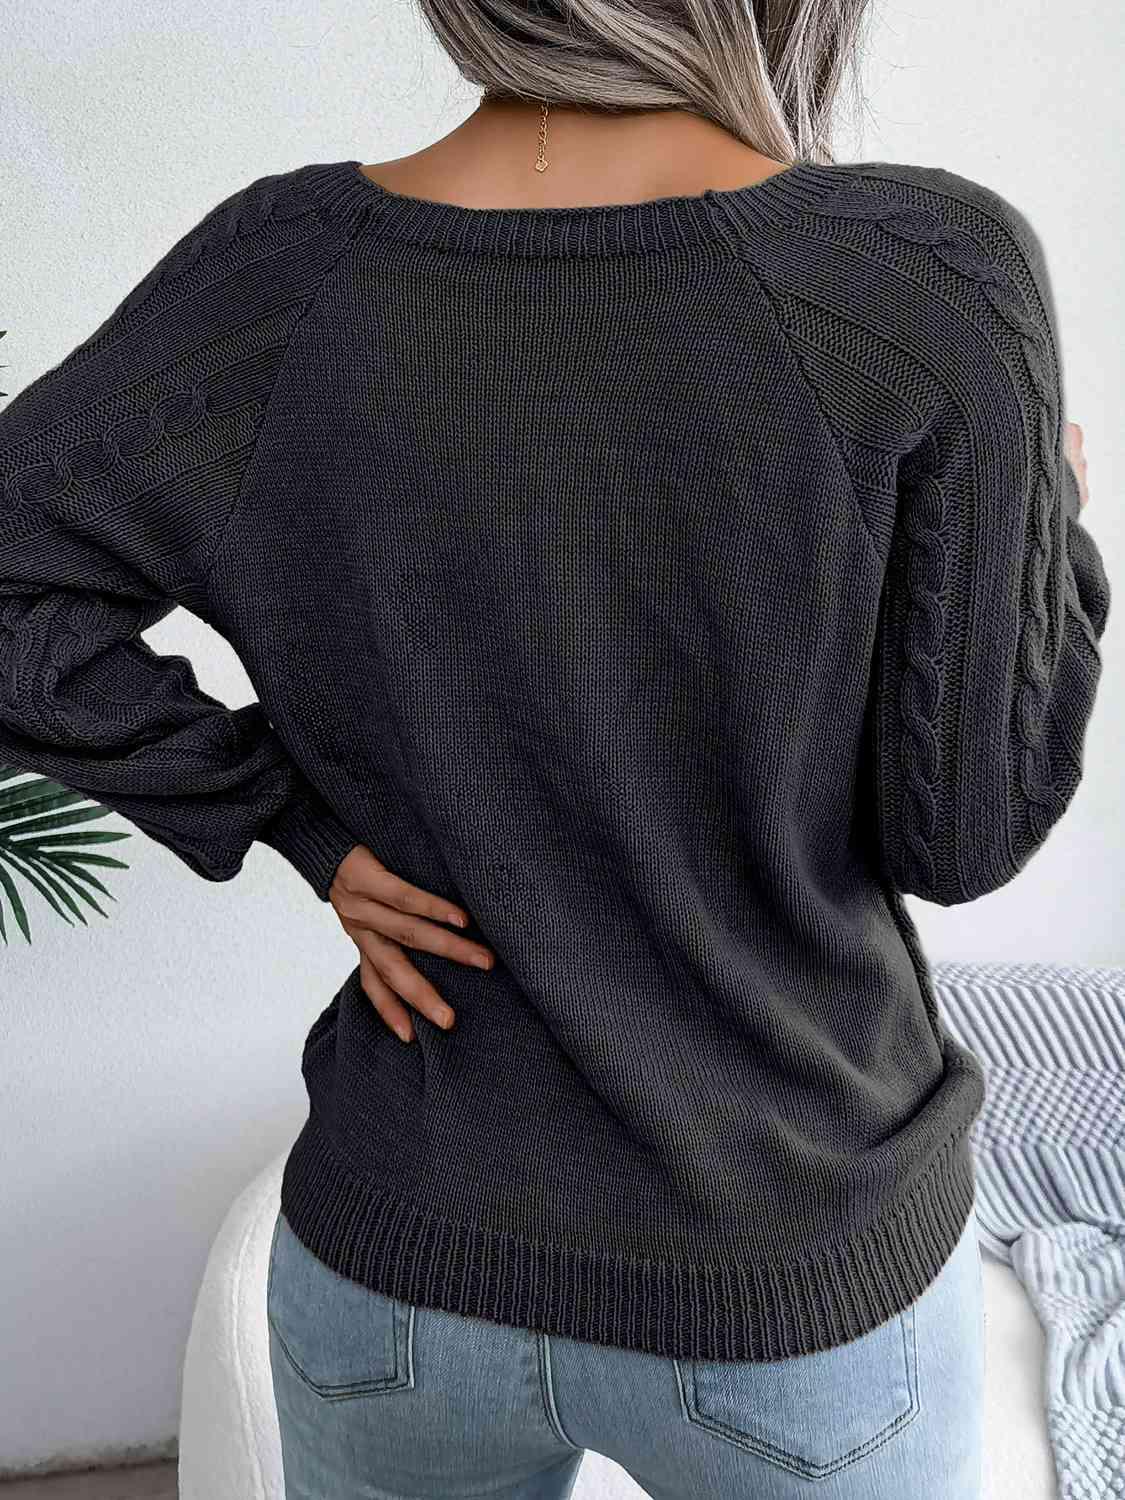 Bona Fide Fashion - Decorative Button Cable-Knit Sweater - Women Fashion - Bona Fide Fashion